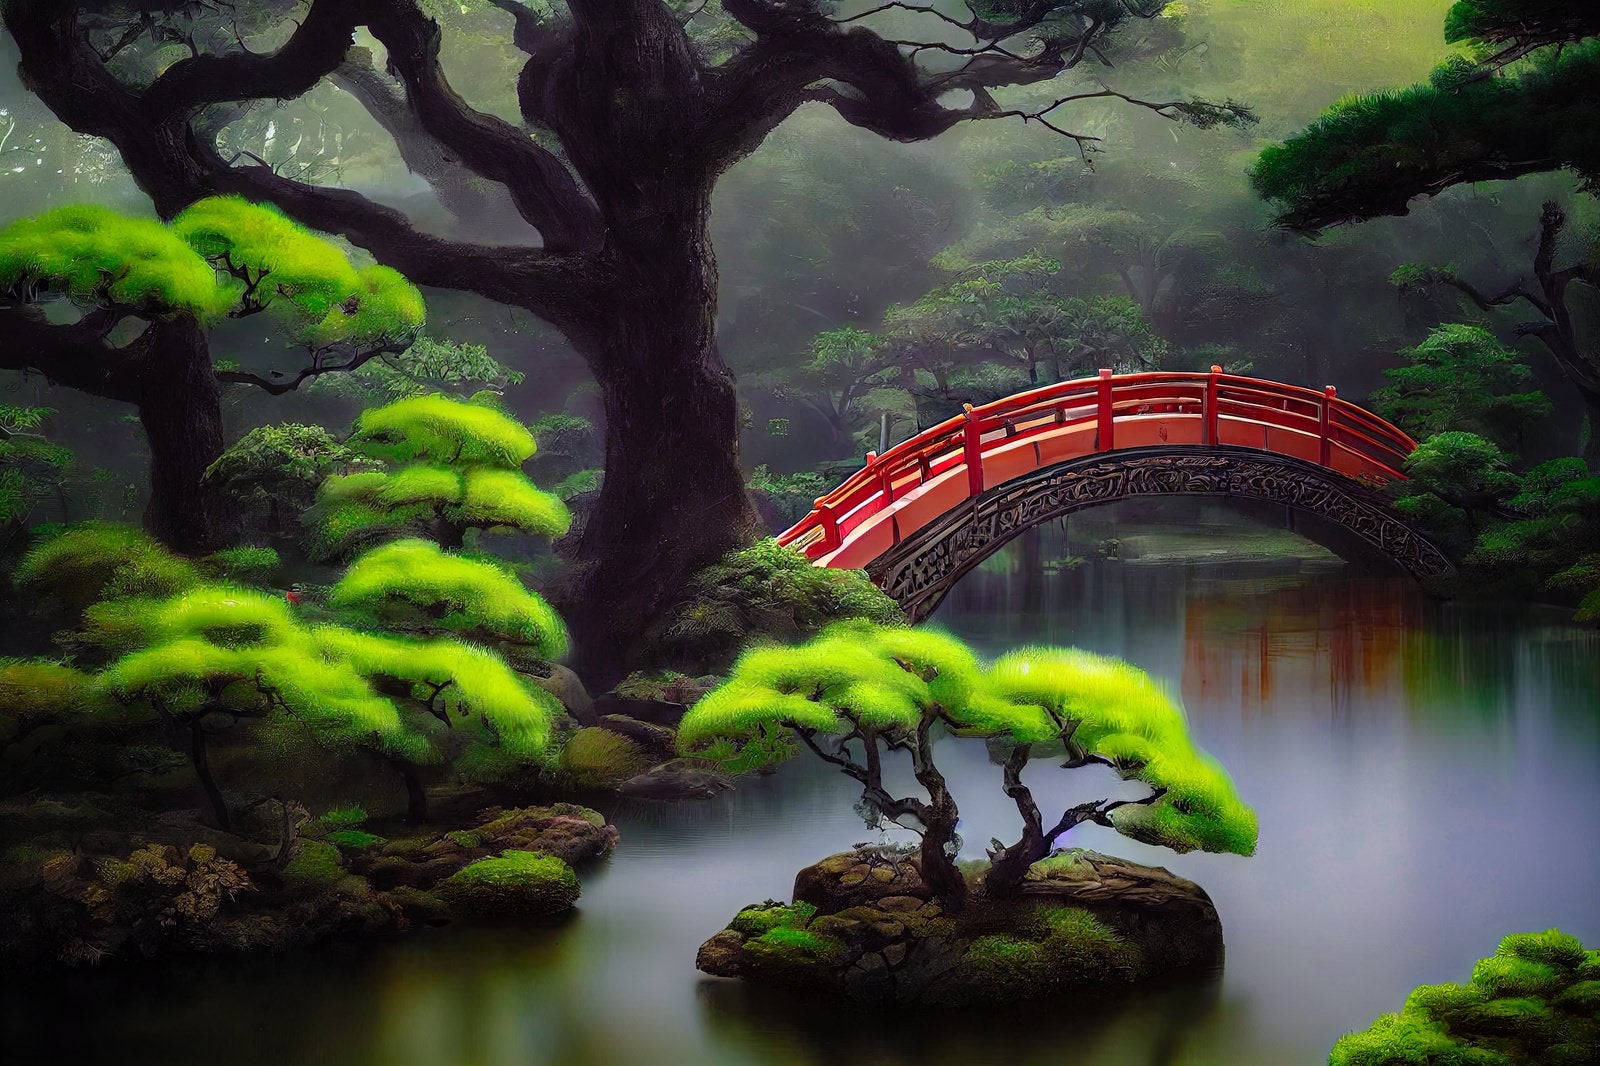 「池泉庭園の太鼓橋」の写真